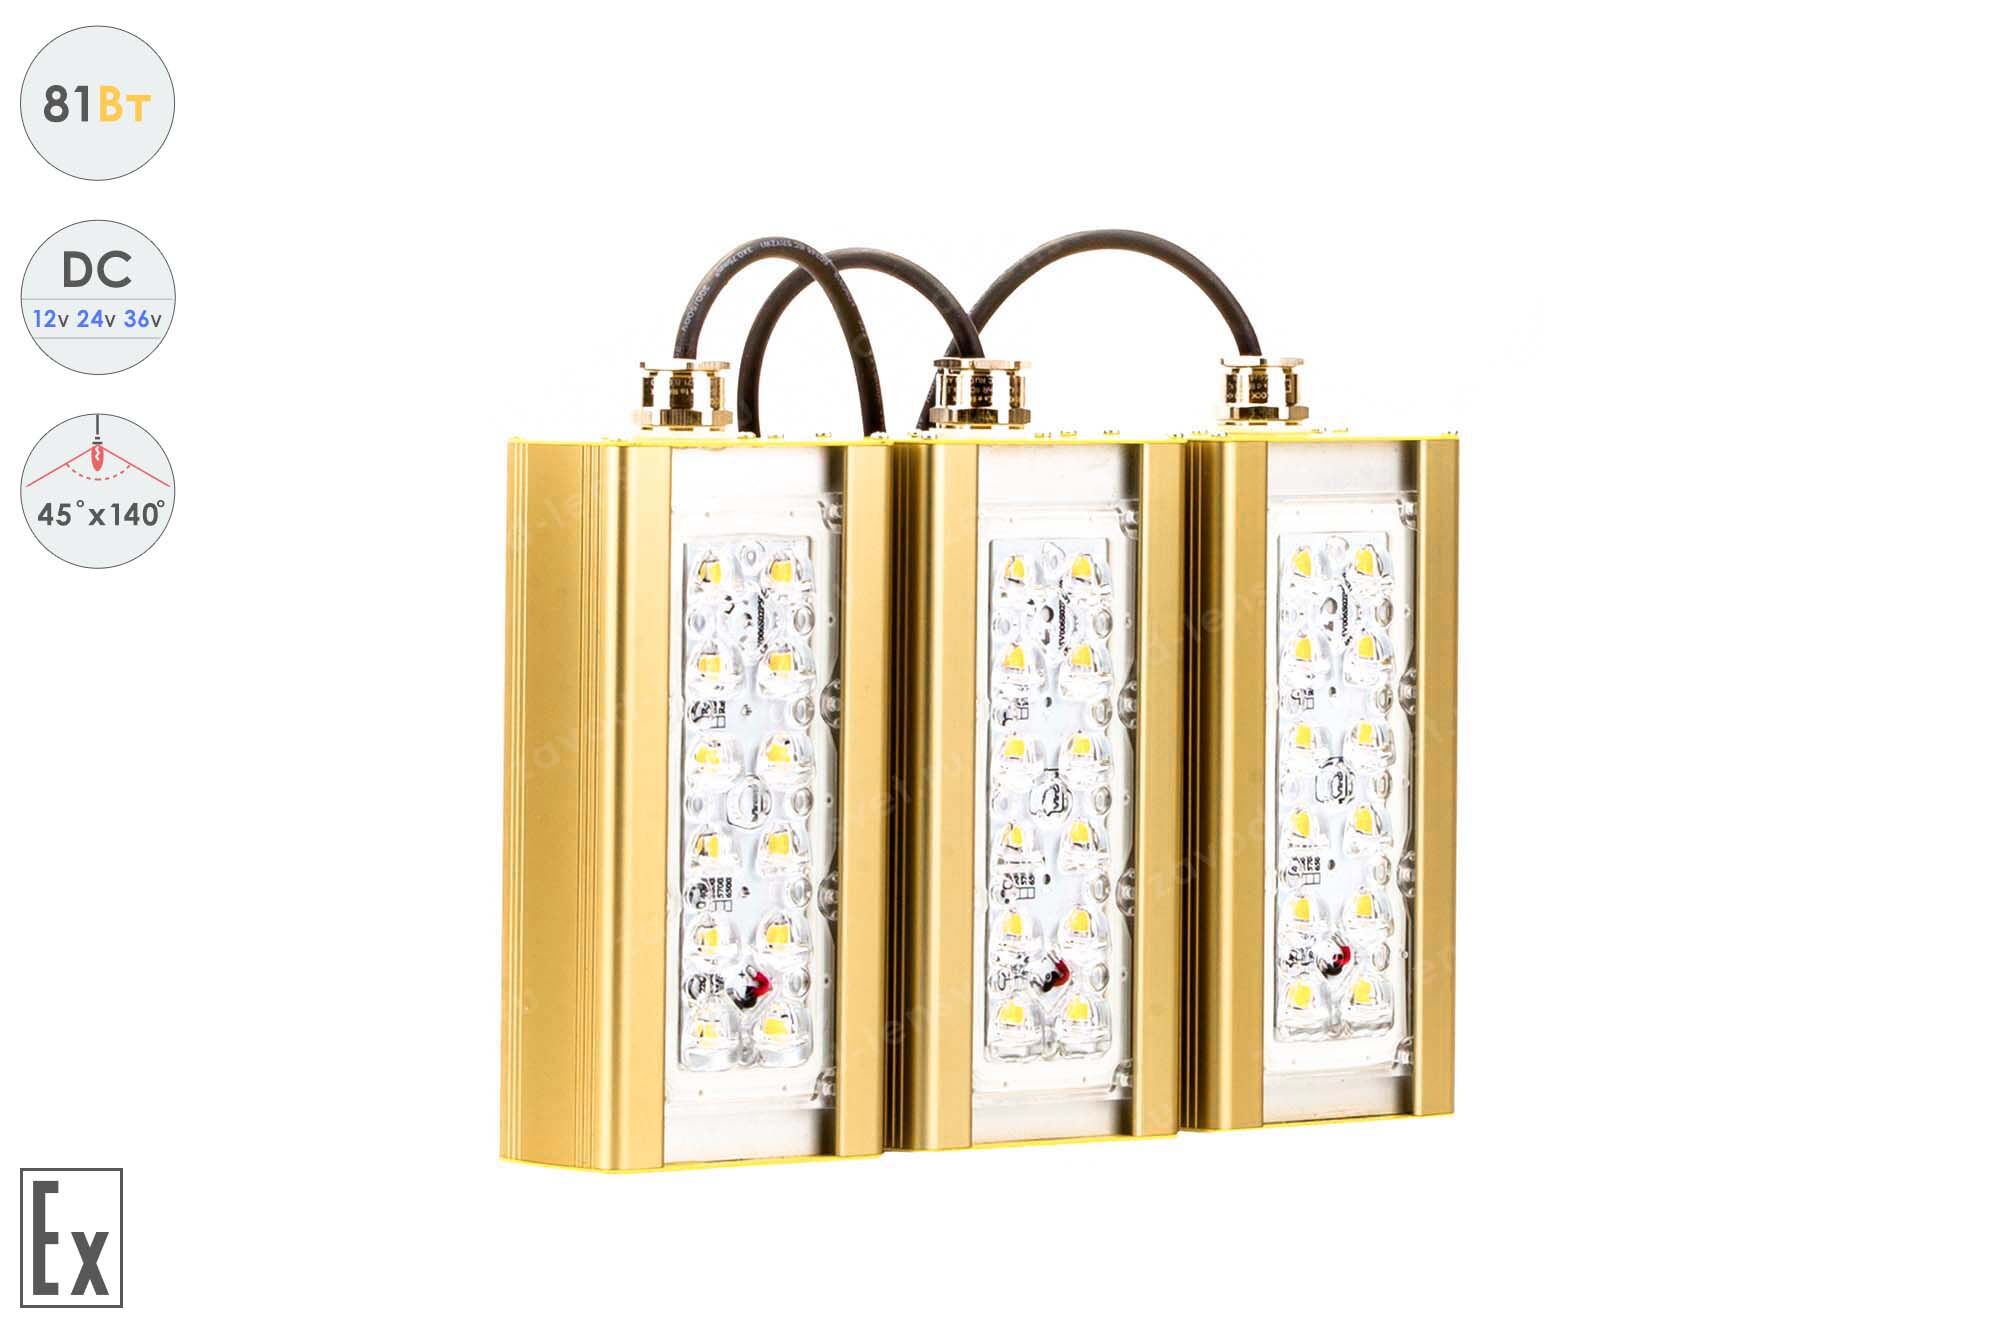 Светодиодный светильник Низковольтный Магистраль Взрывозащищенная GOLD, консоль K-3, 81 Вт, 45X140°